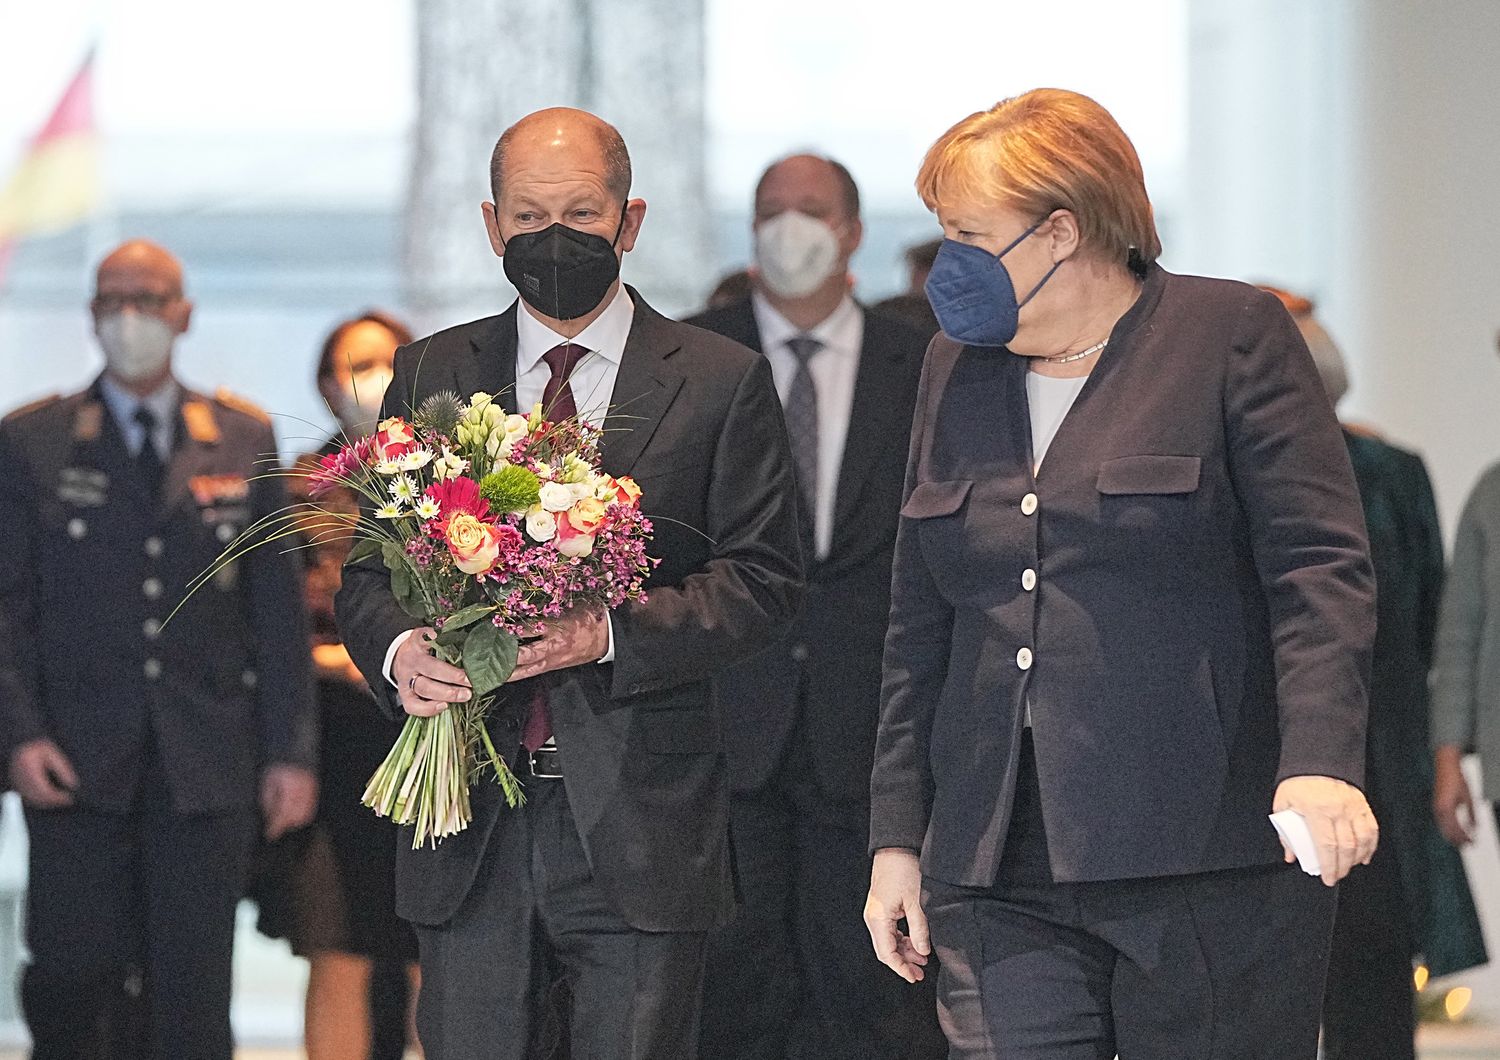 Il nuovo cancelliere Scholz offre i fiori ad Angela Merkel